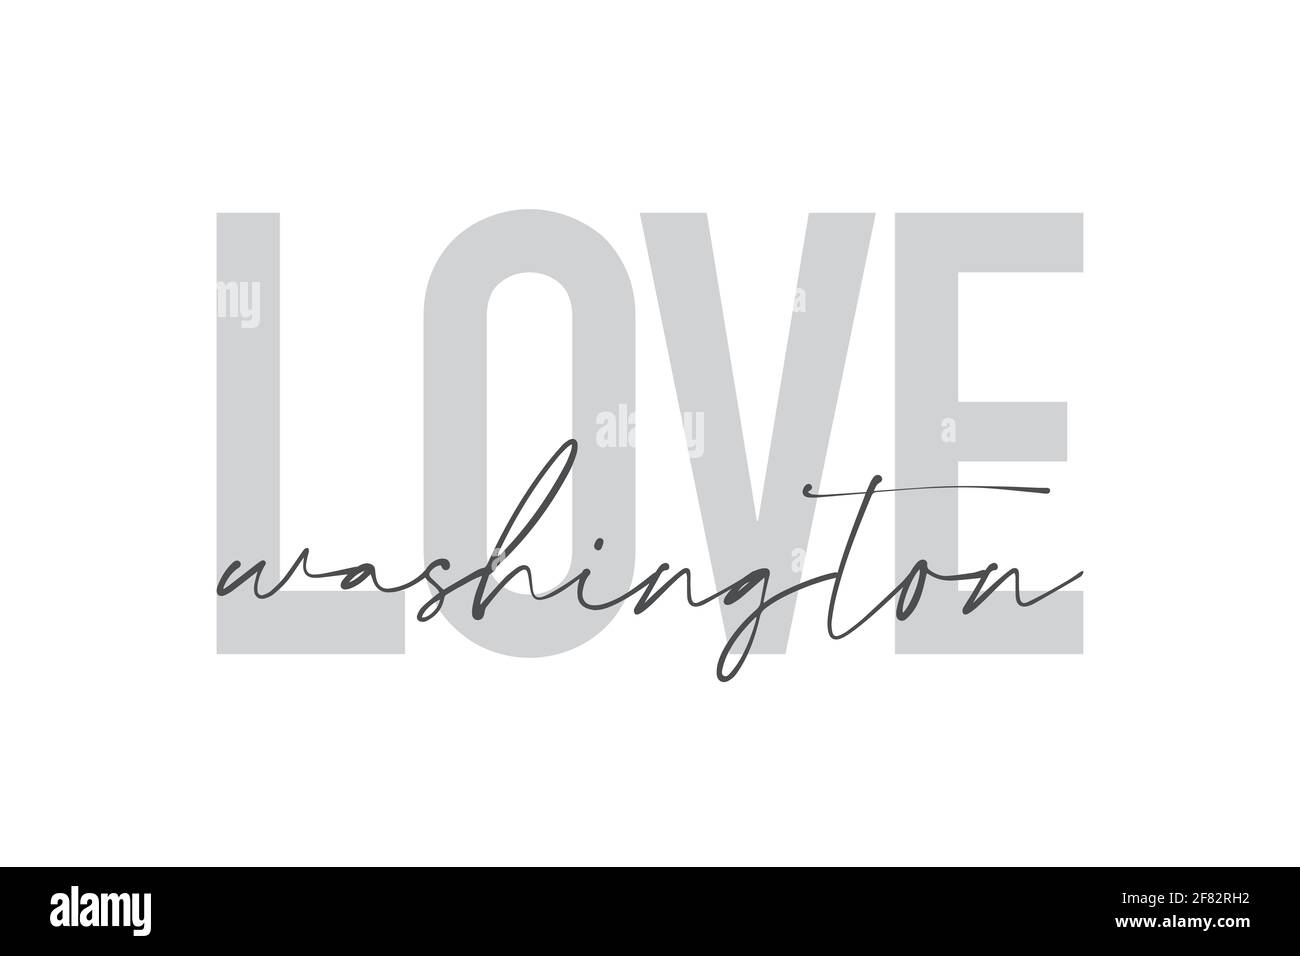 Design grafico moderno, urbano e semplice di un detto 'Love Washington' in colori grigi. Tipografia trendy, fredda, manoscritta Foto Stock